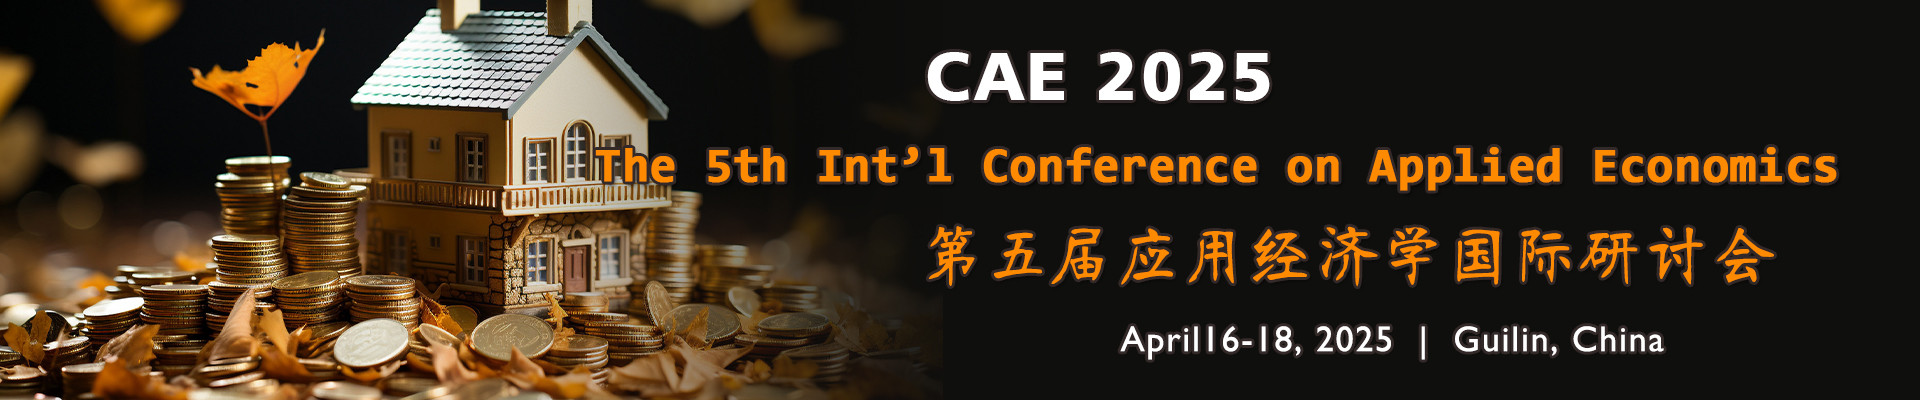 第五届应用经济学国际研讨会(CAE 2025)